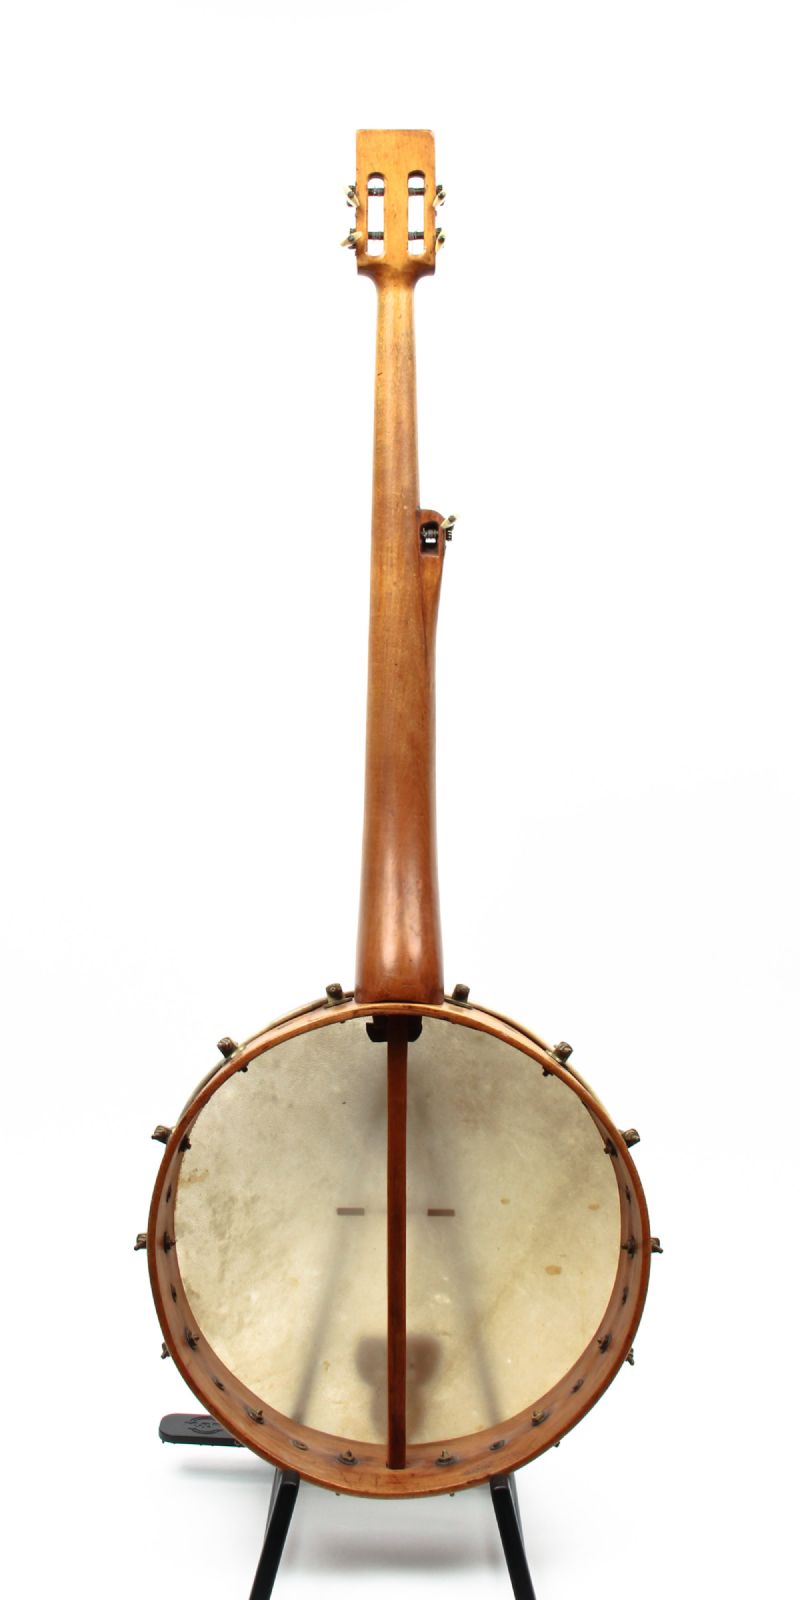 banjo images